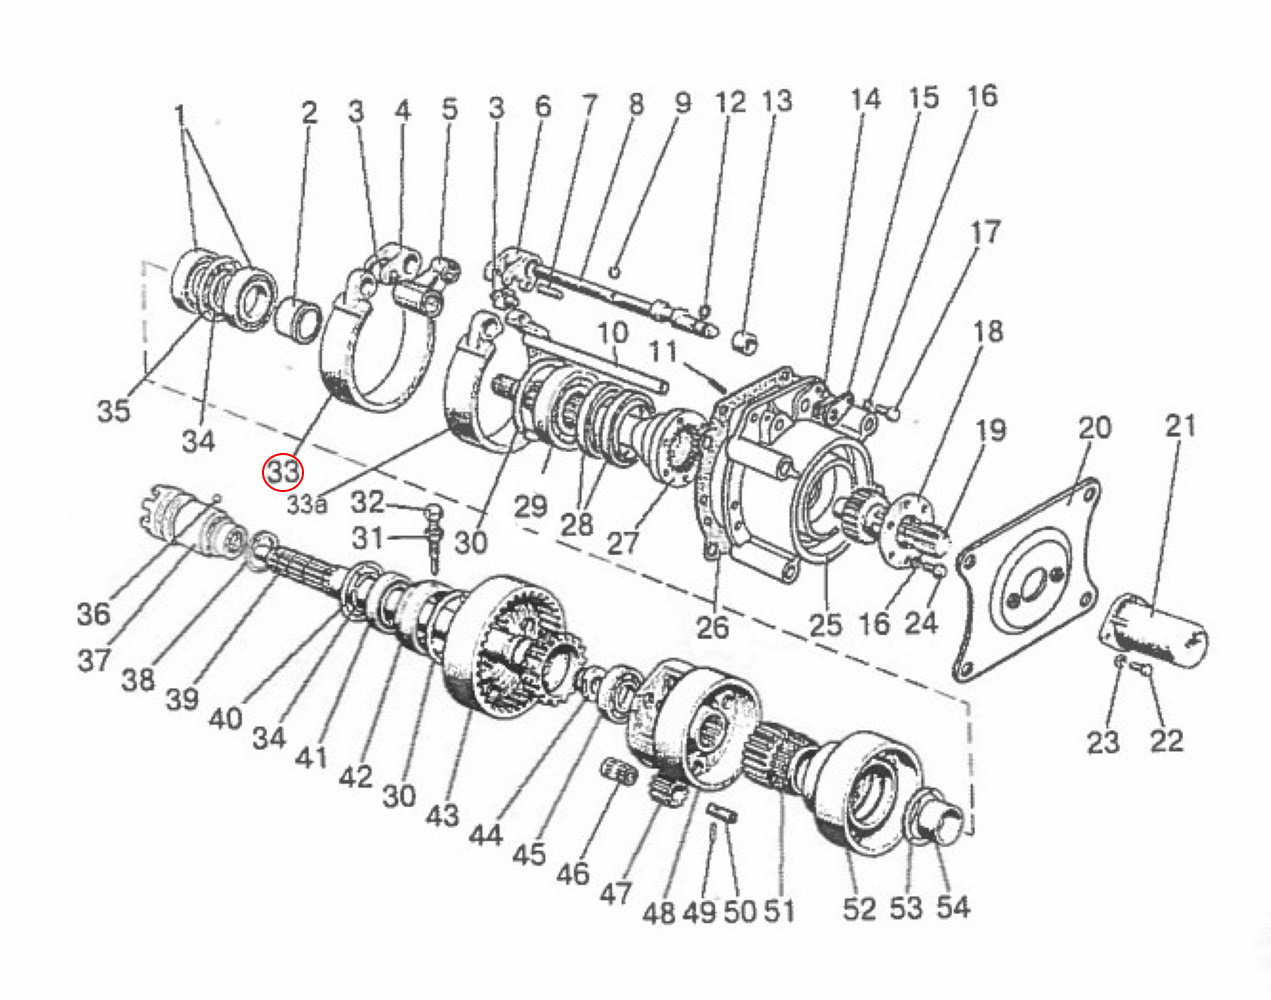 Bremsband Nachbau schmal 34mm Zapfwelle Zapfwellengetriebe | 85-4202100 - 1